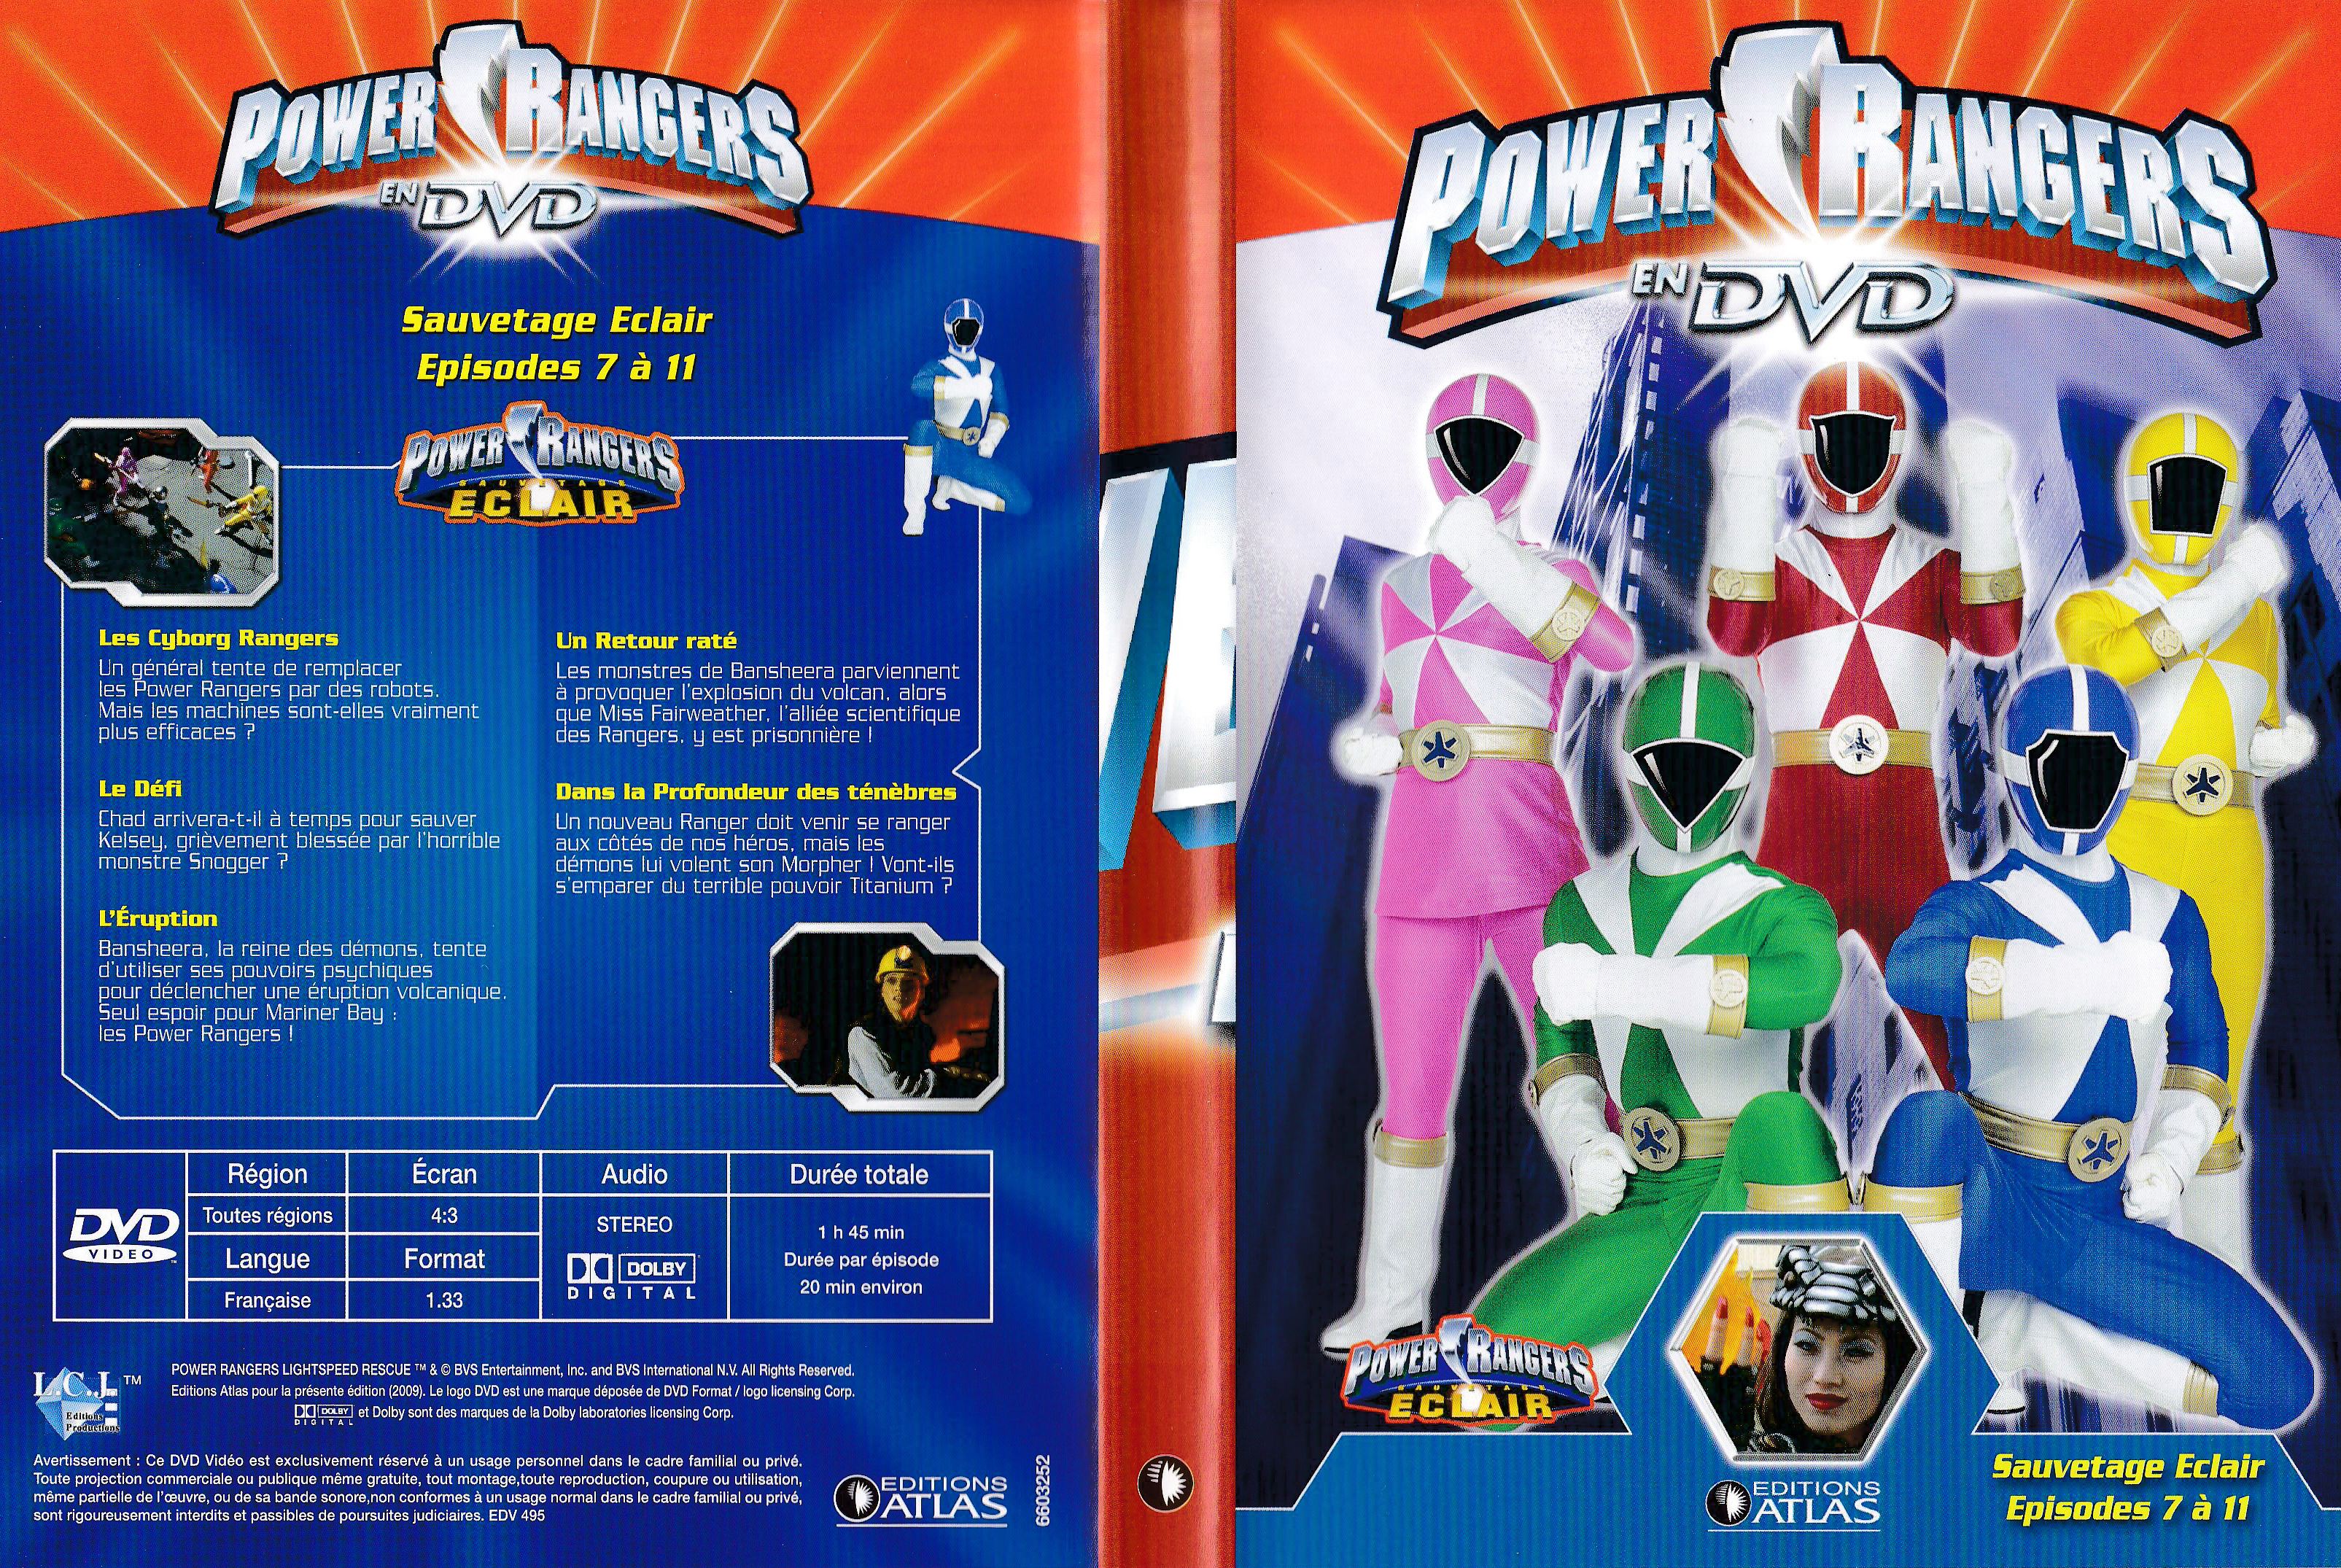 Power Rangers en DVD n°52